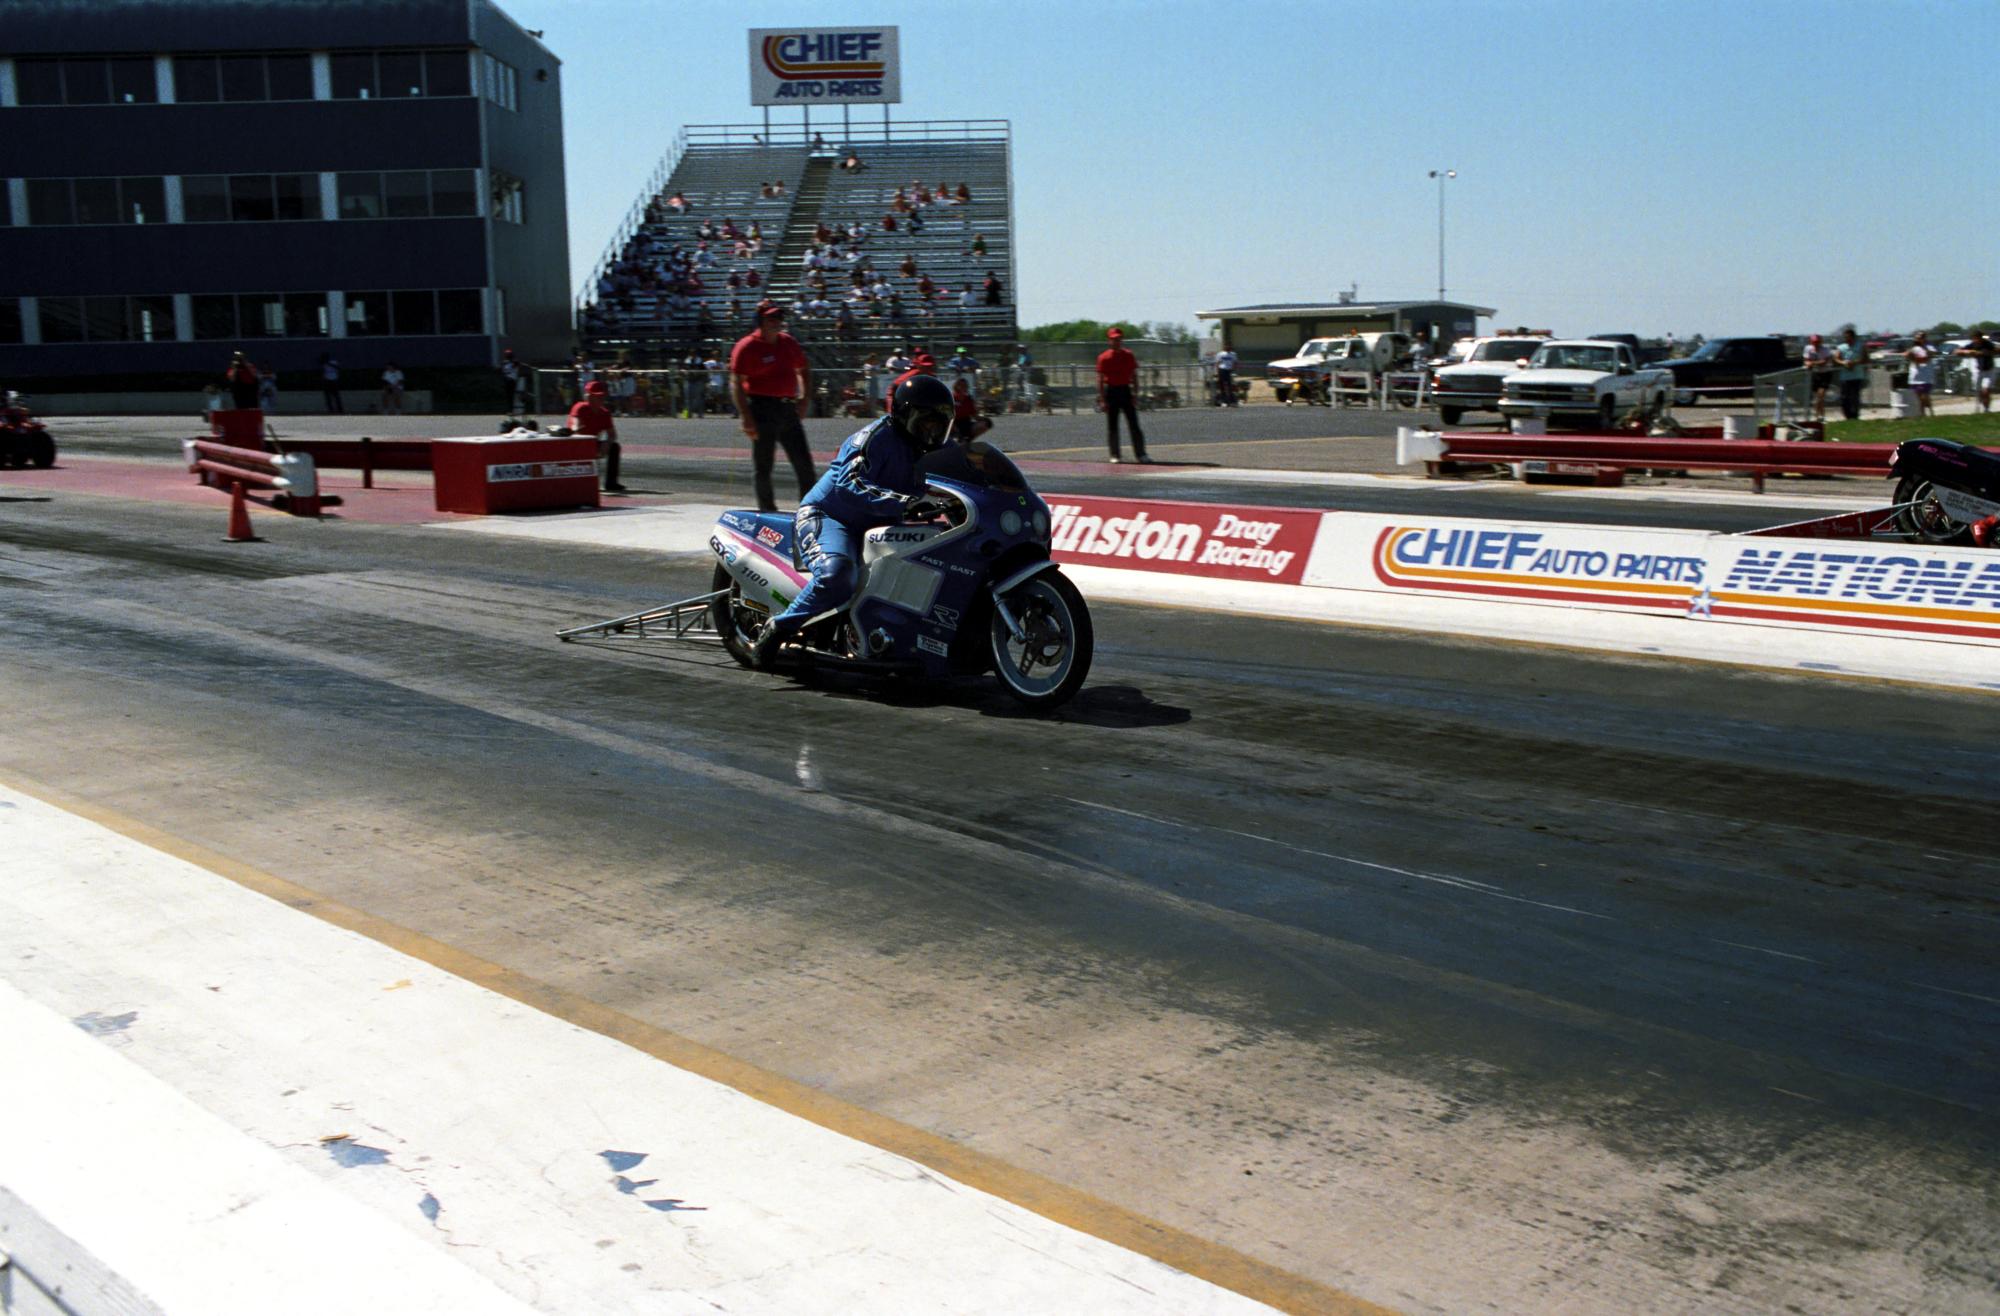 Texas Motor Drag Racing (1991) - Texas Motorcycle Drag Racing #1